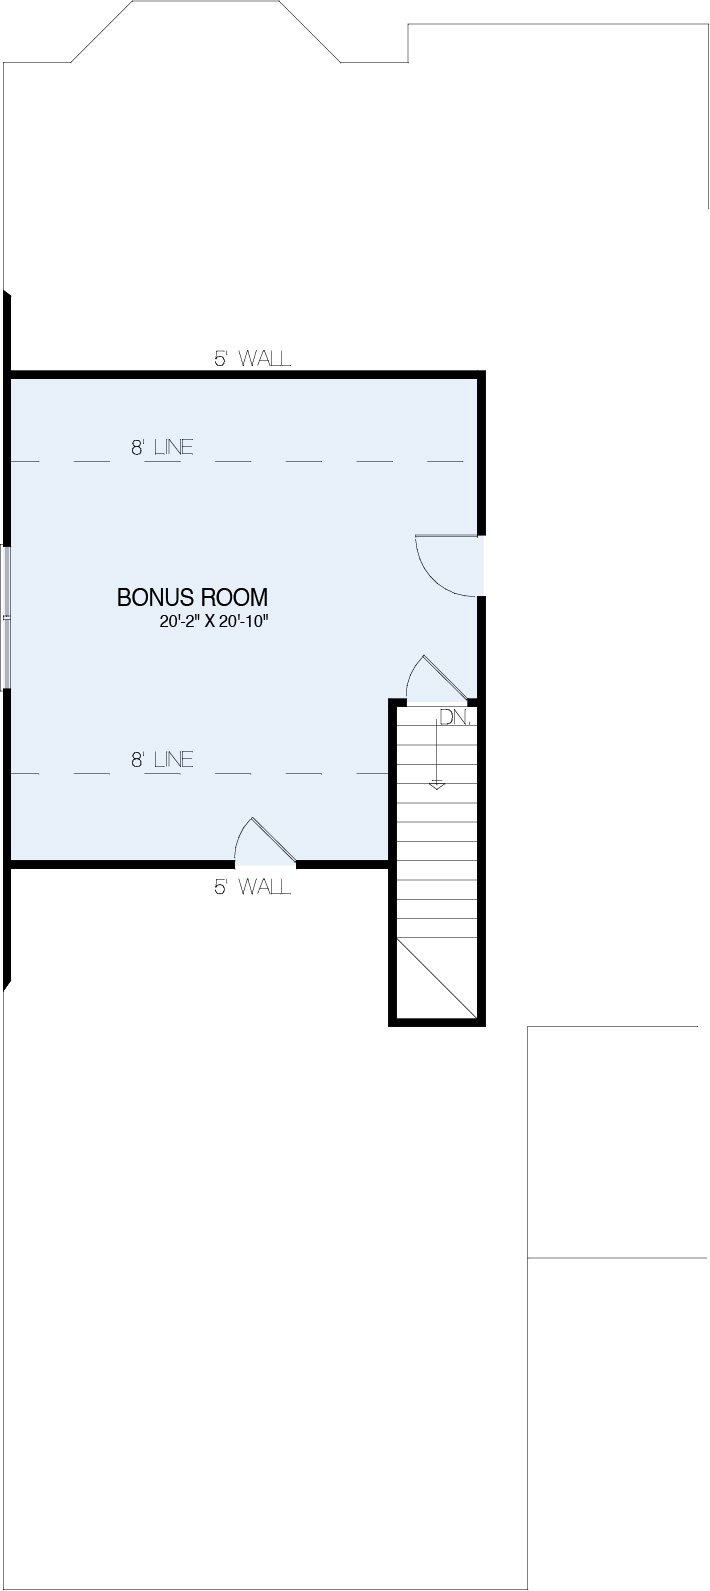 Cozy 2 Bed 2 Bath 1,000 Sq. Ft. Plans - Houseplans Blog 